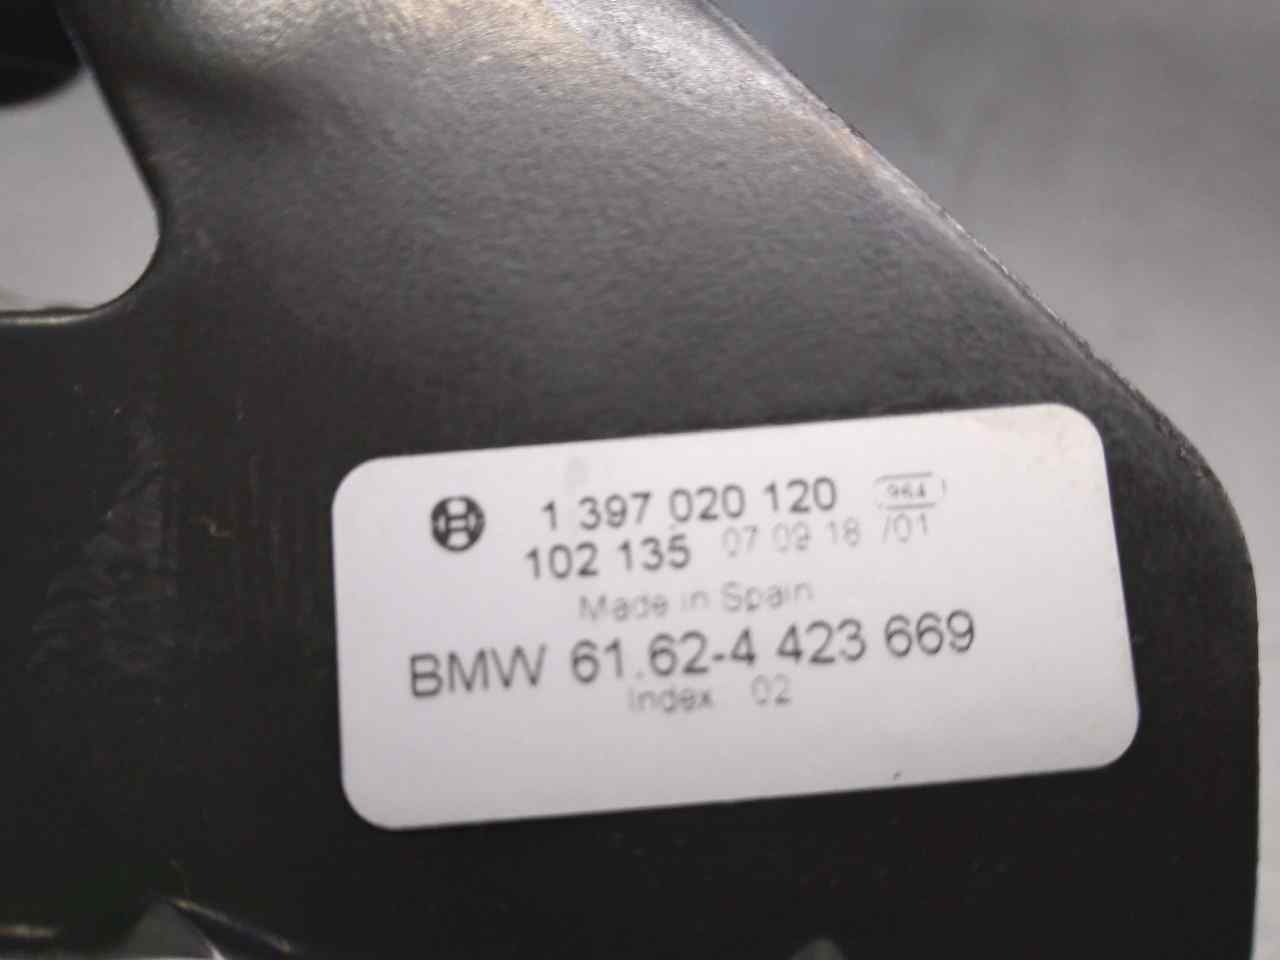 BMW 3 Series E90/E91/E92/E93 (2004-2013) Galinio dangčio (bagažinės) valytuvo varikliukas 61624423669, 1397220903 19815943